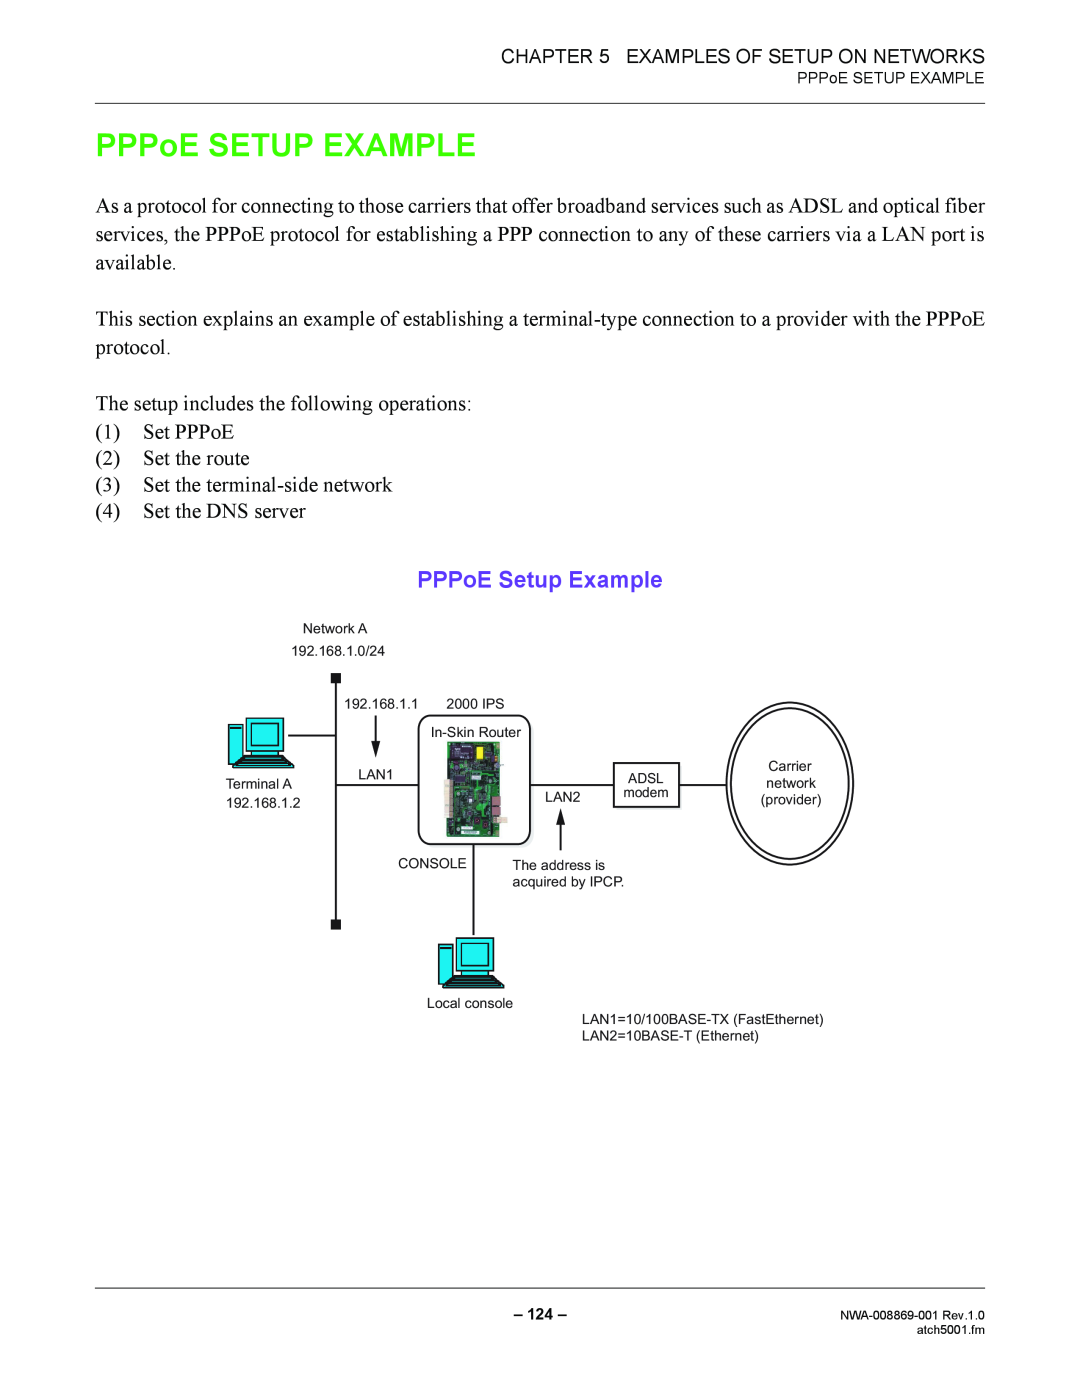 NEC NWA-008869-001 manual PPPoE SETUP EXAMPLE, PPPoE Setup Example 